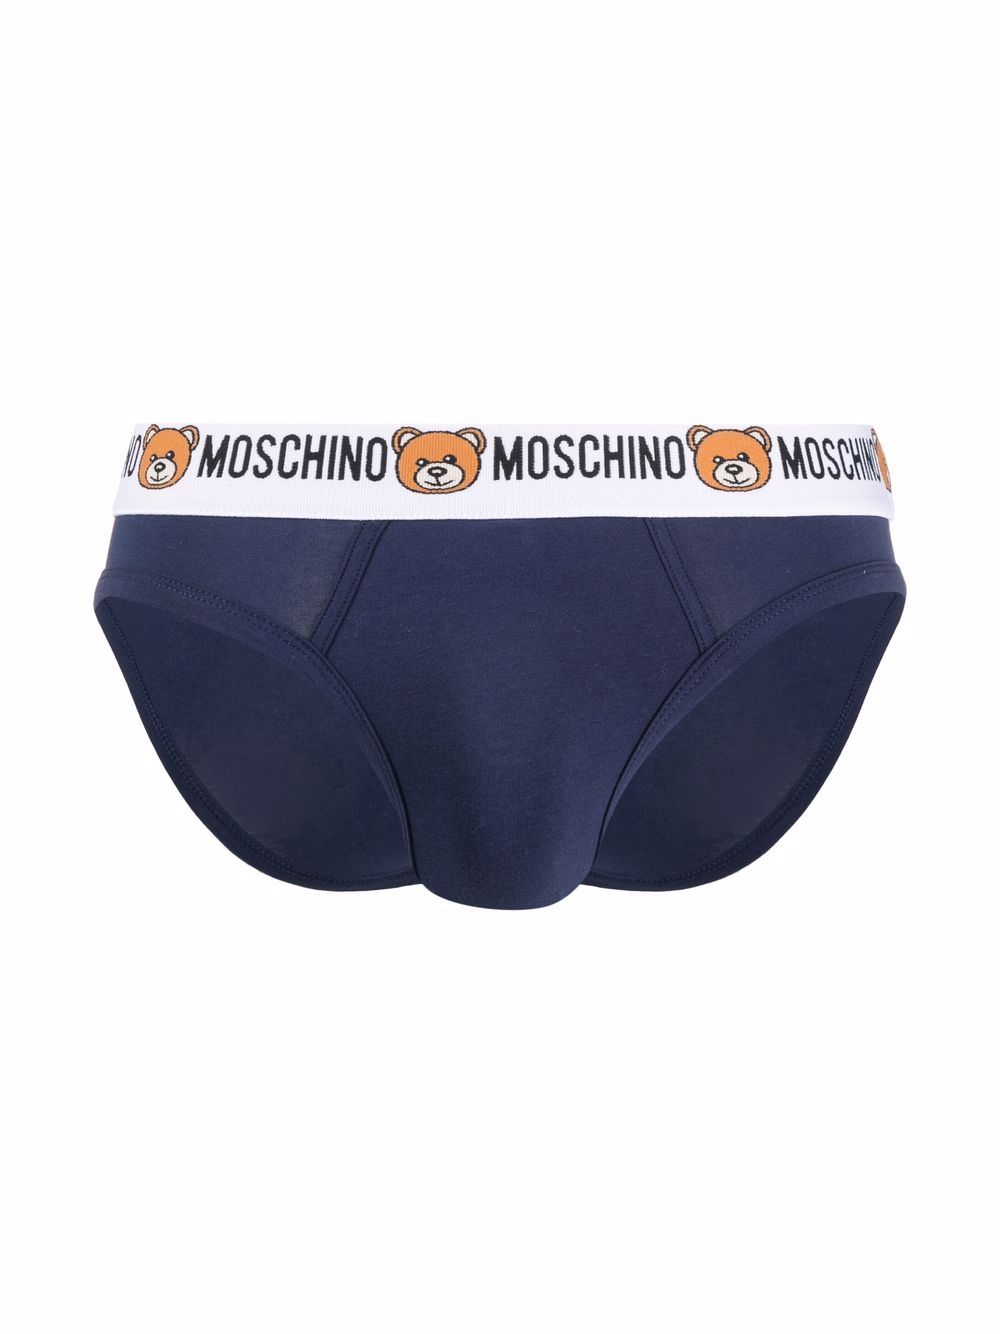 Moschino Twee slips met logo tailleband - Blauw